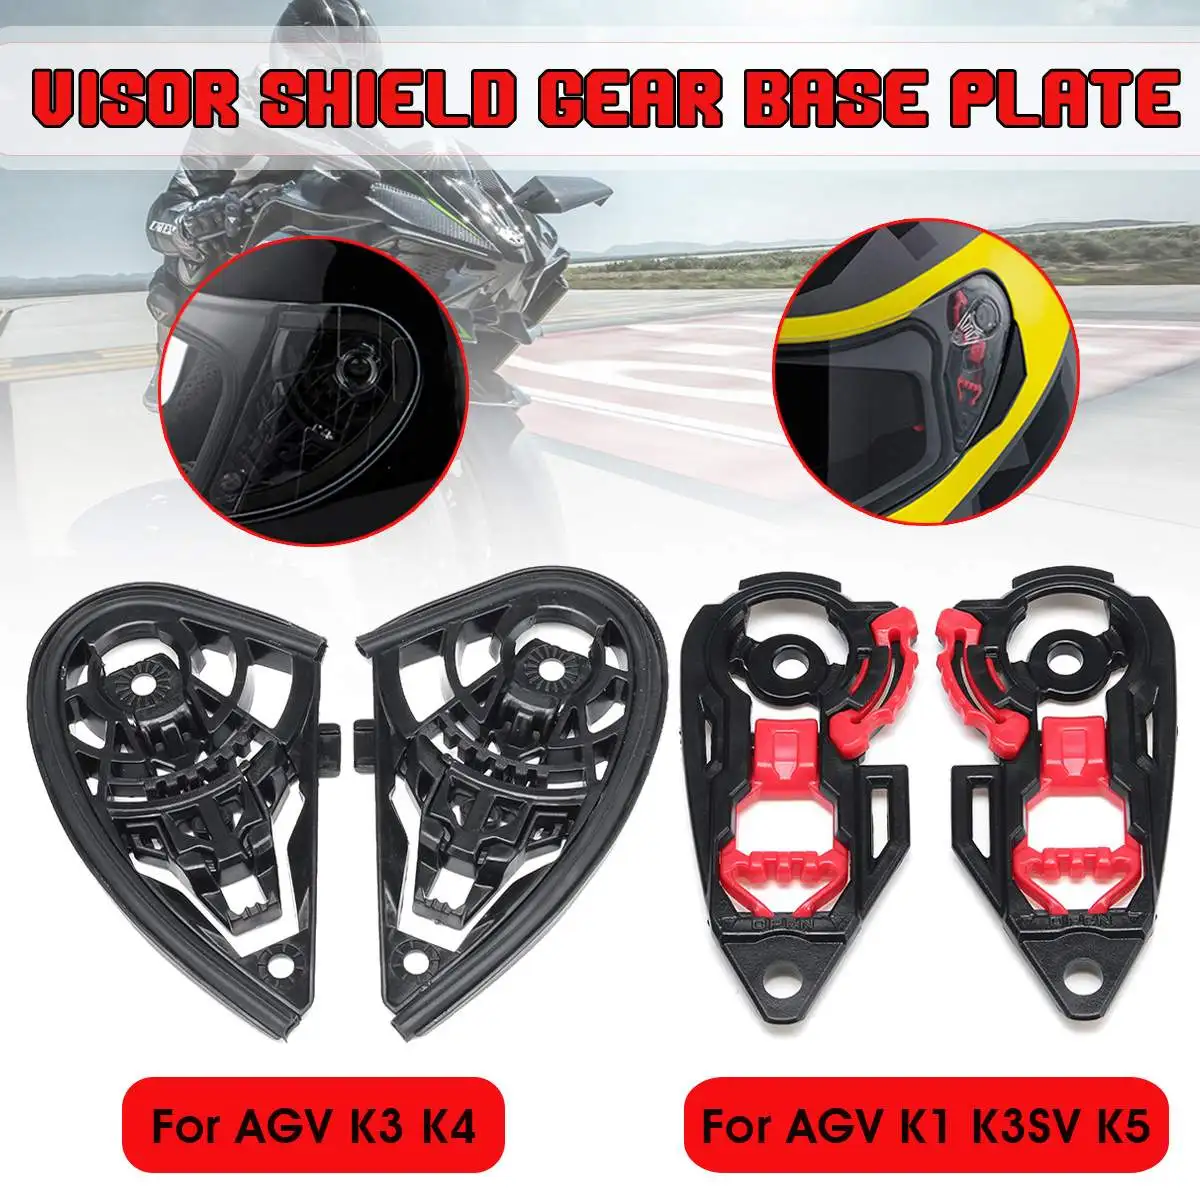 Защитный козырек для мотоциклетного шлема AGV K1 K3SV K5 / K3 K4